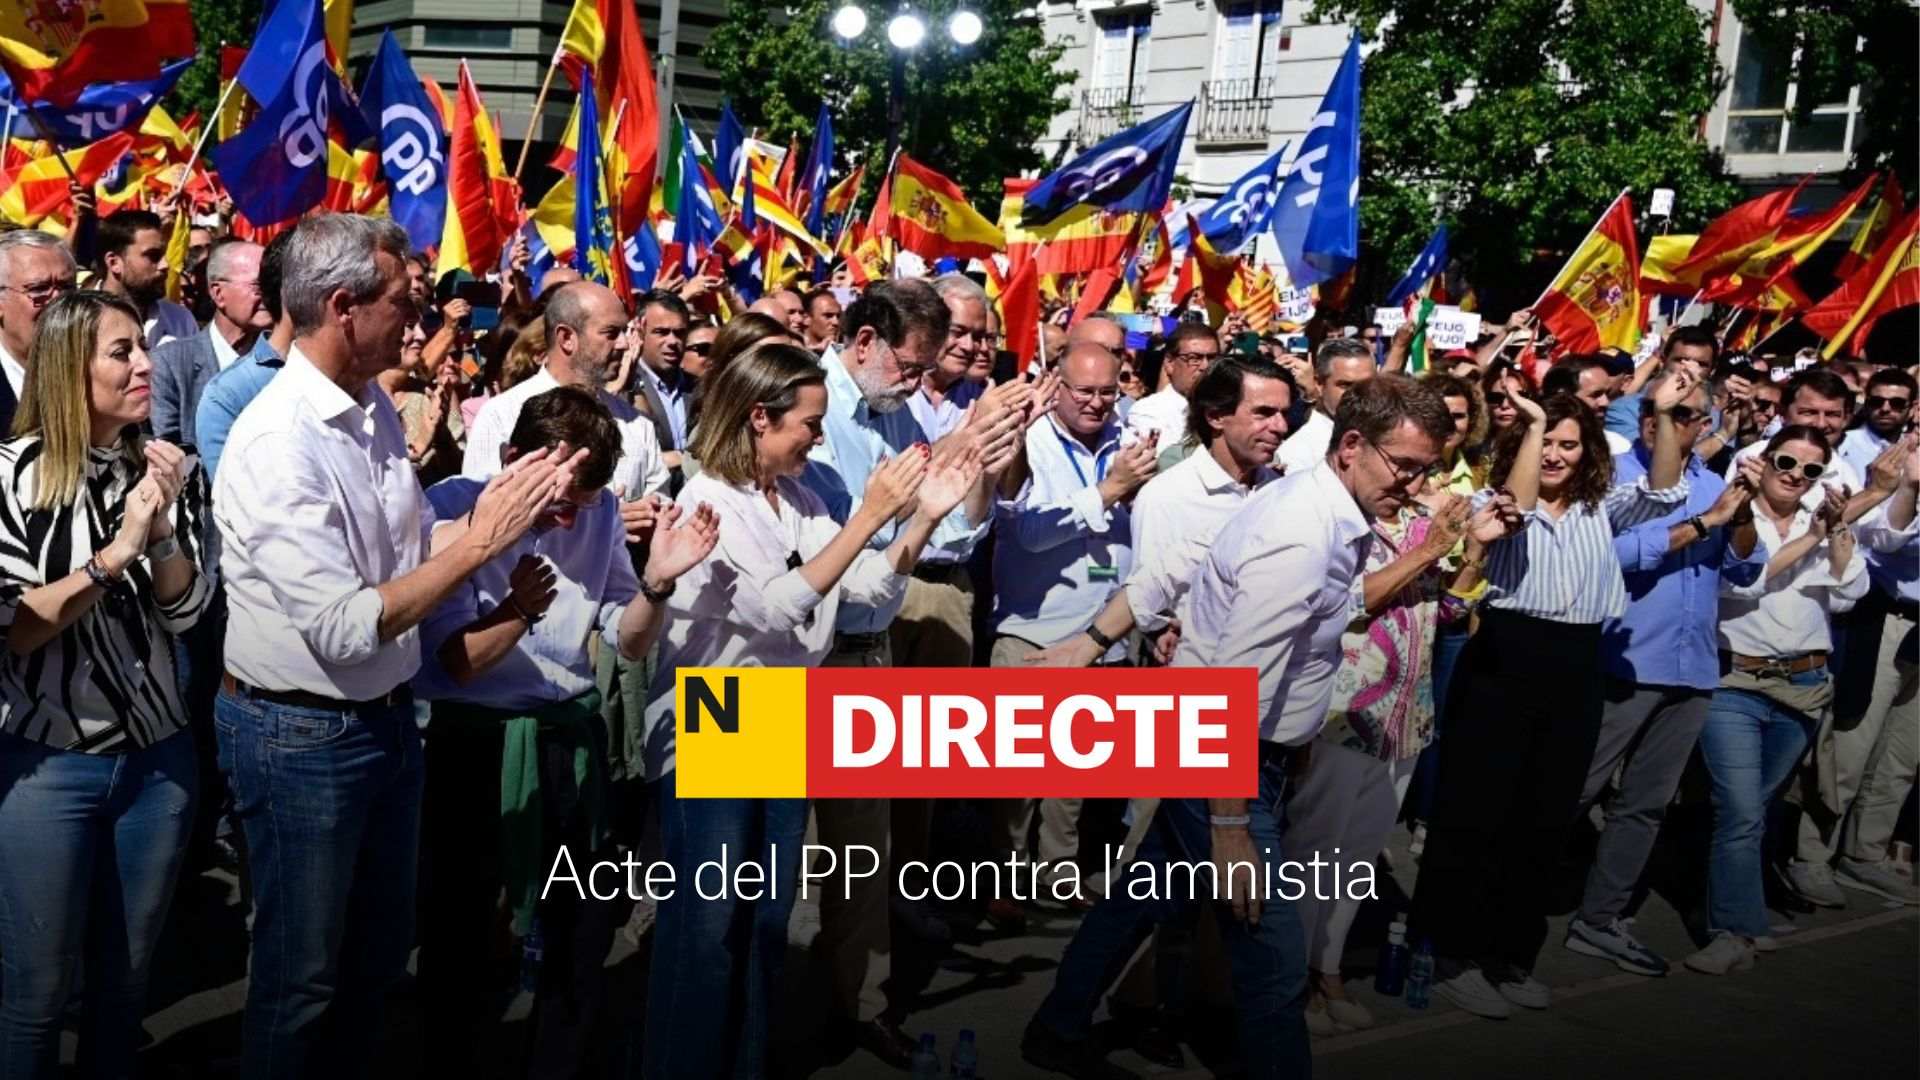 Acto del PP en Madrid contra la amnistía, DIRECTO | Última hora, discursos y todas las reacciones